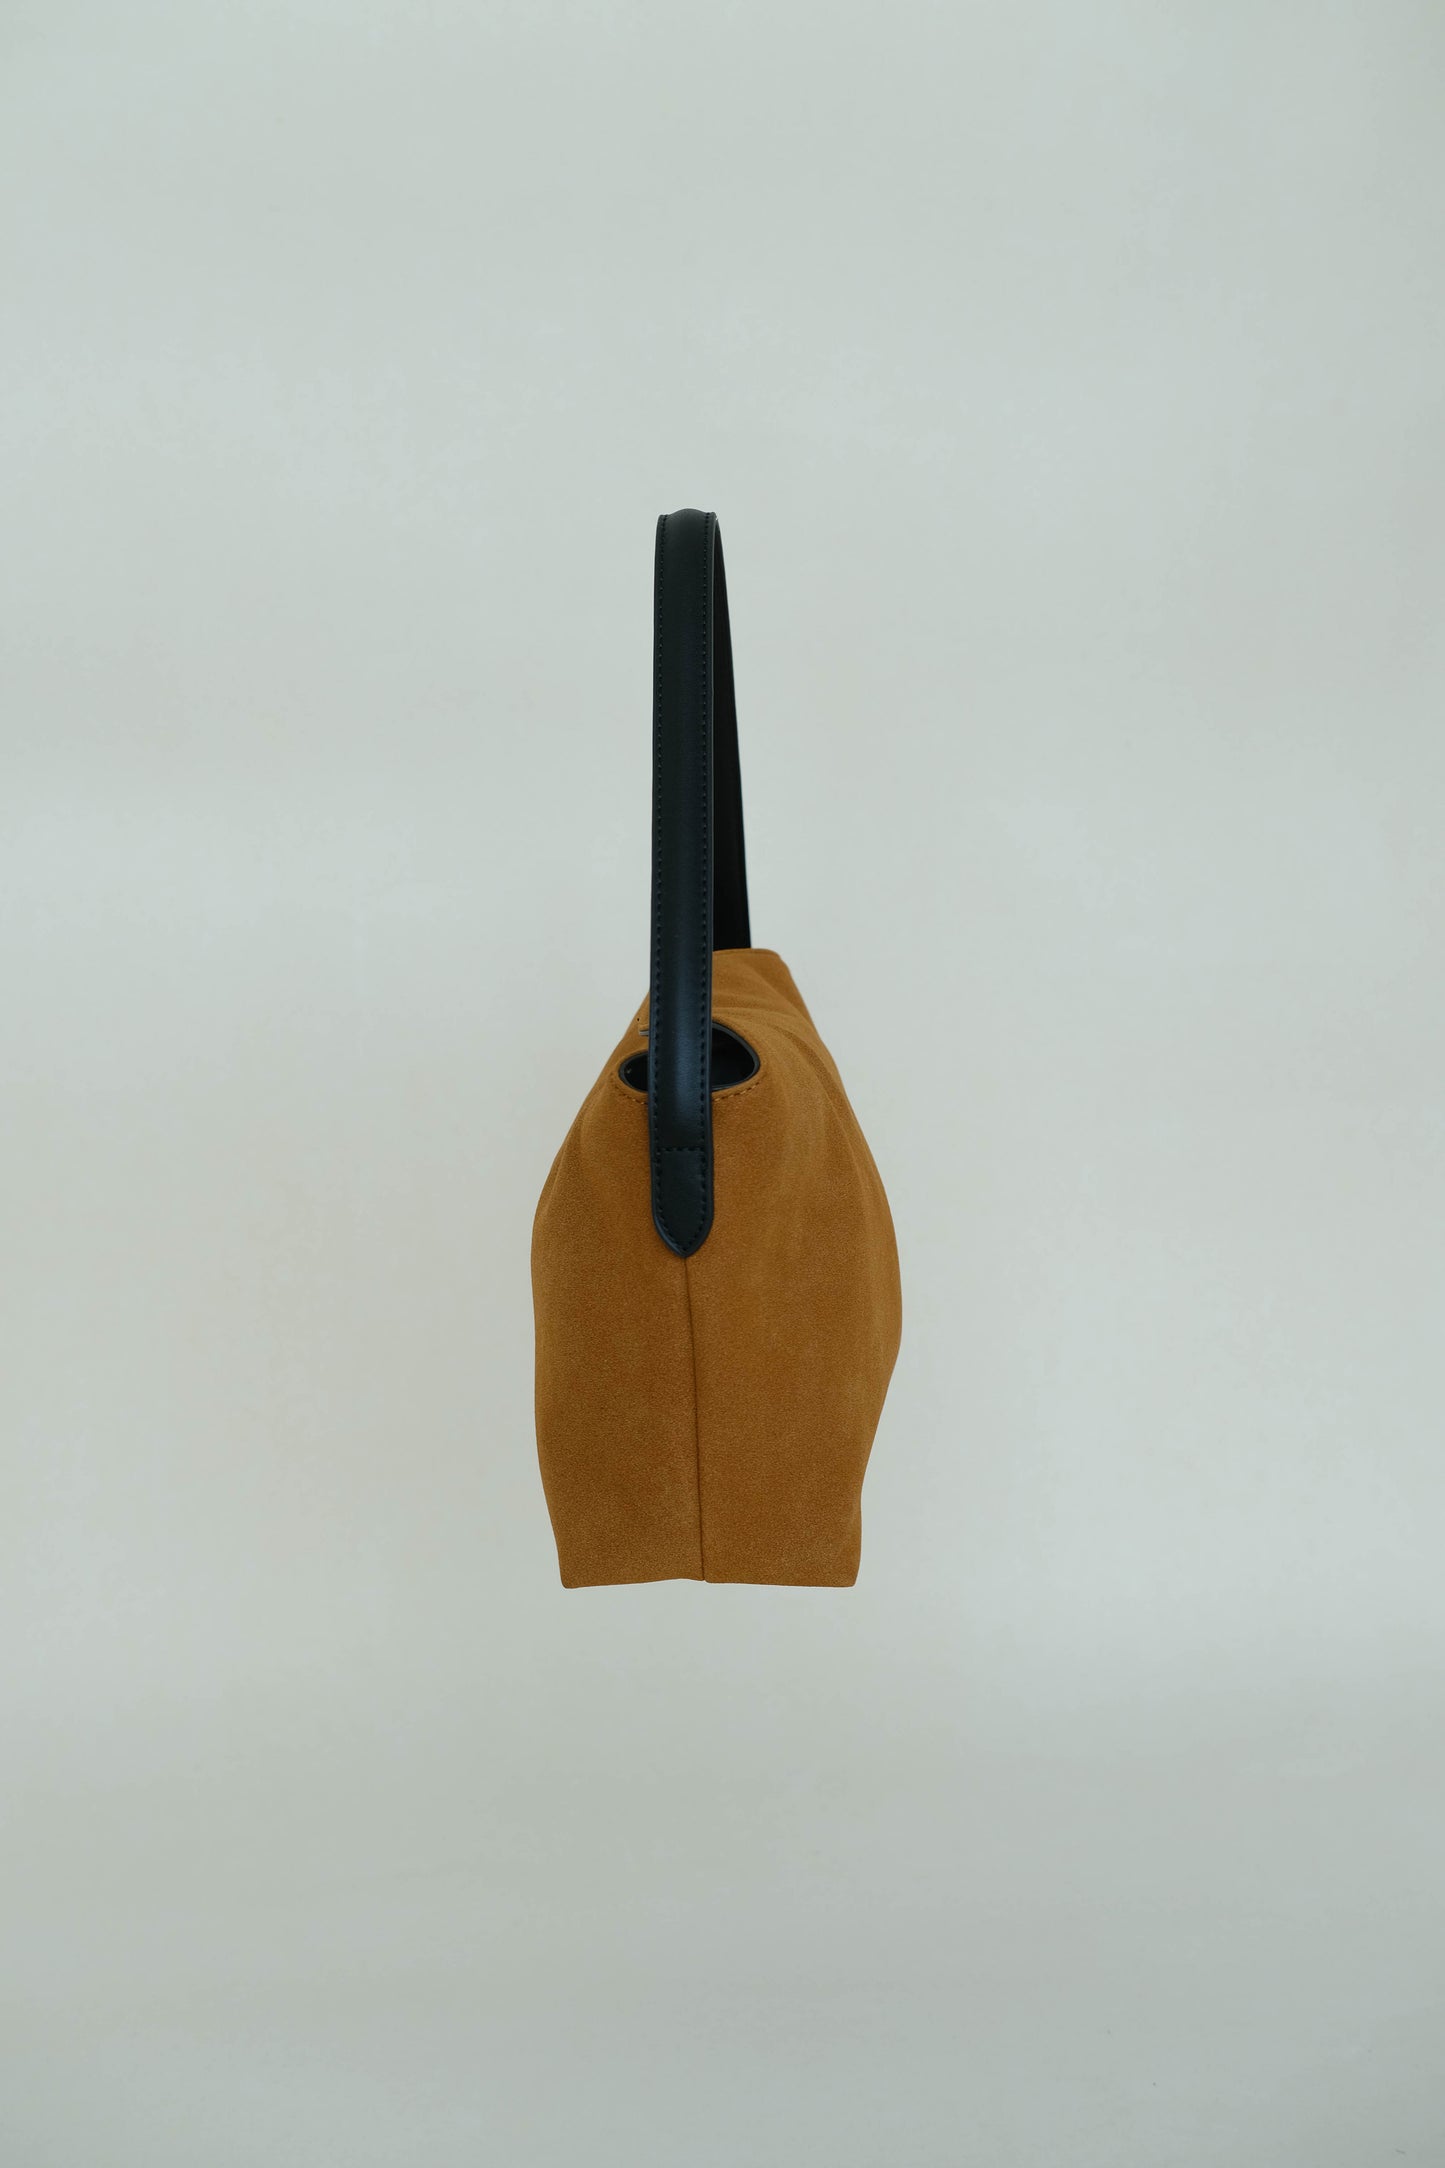 Matte finish single-strap shoulder bag in brown color